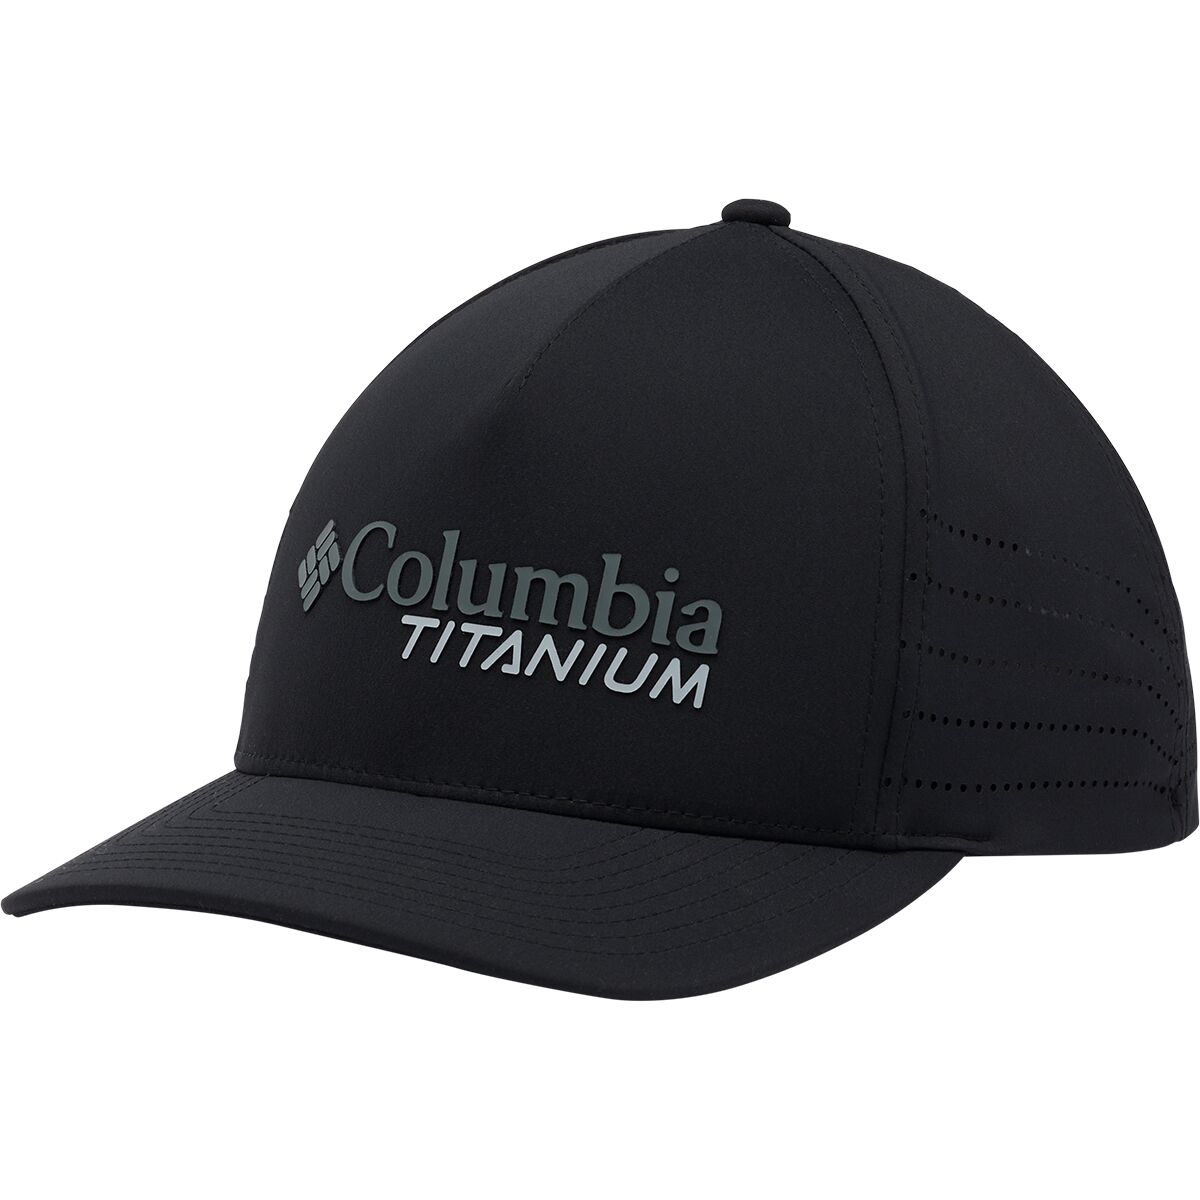 Columbia Titanium Ball Cap - Accessories